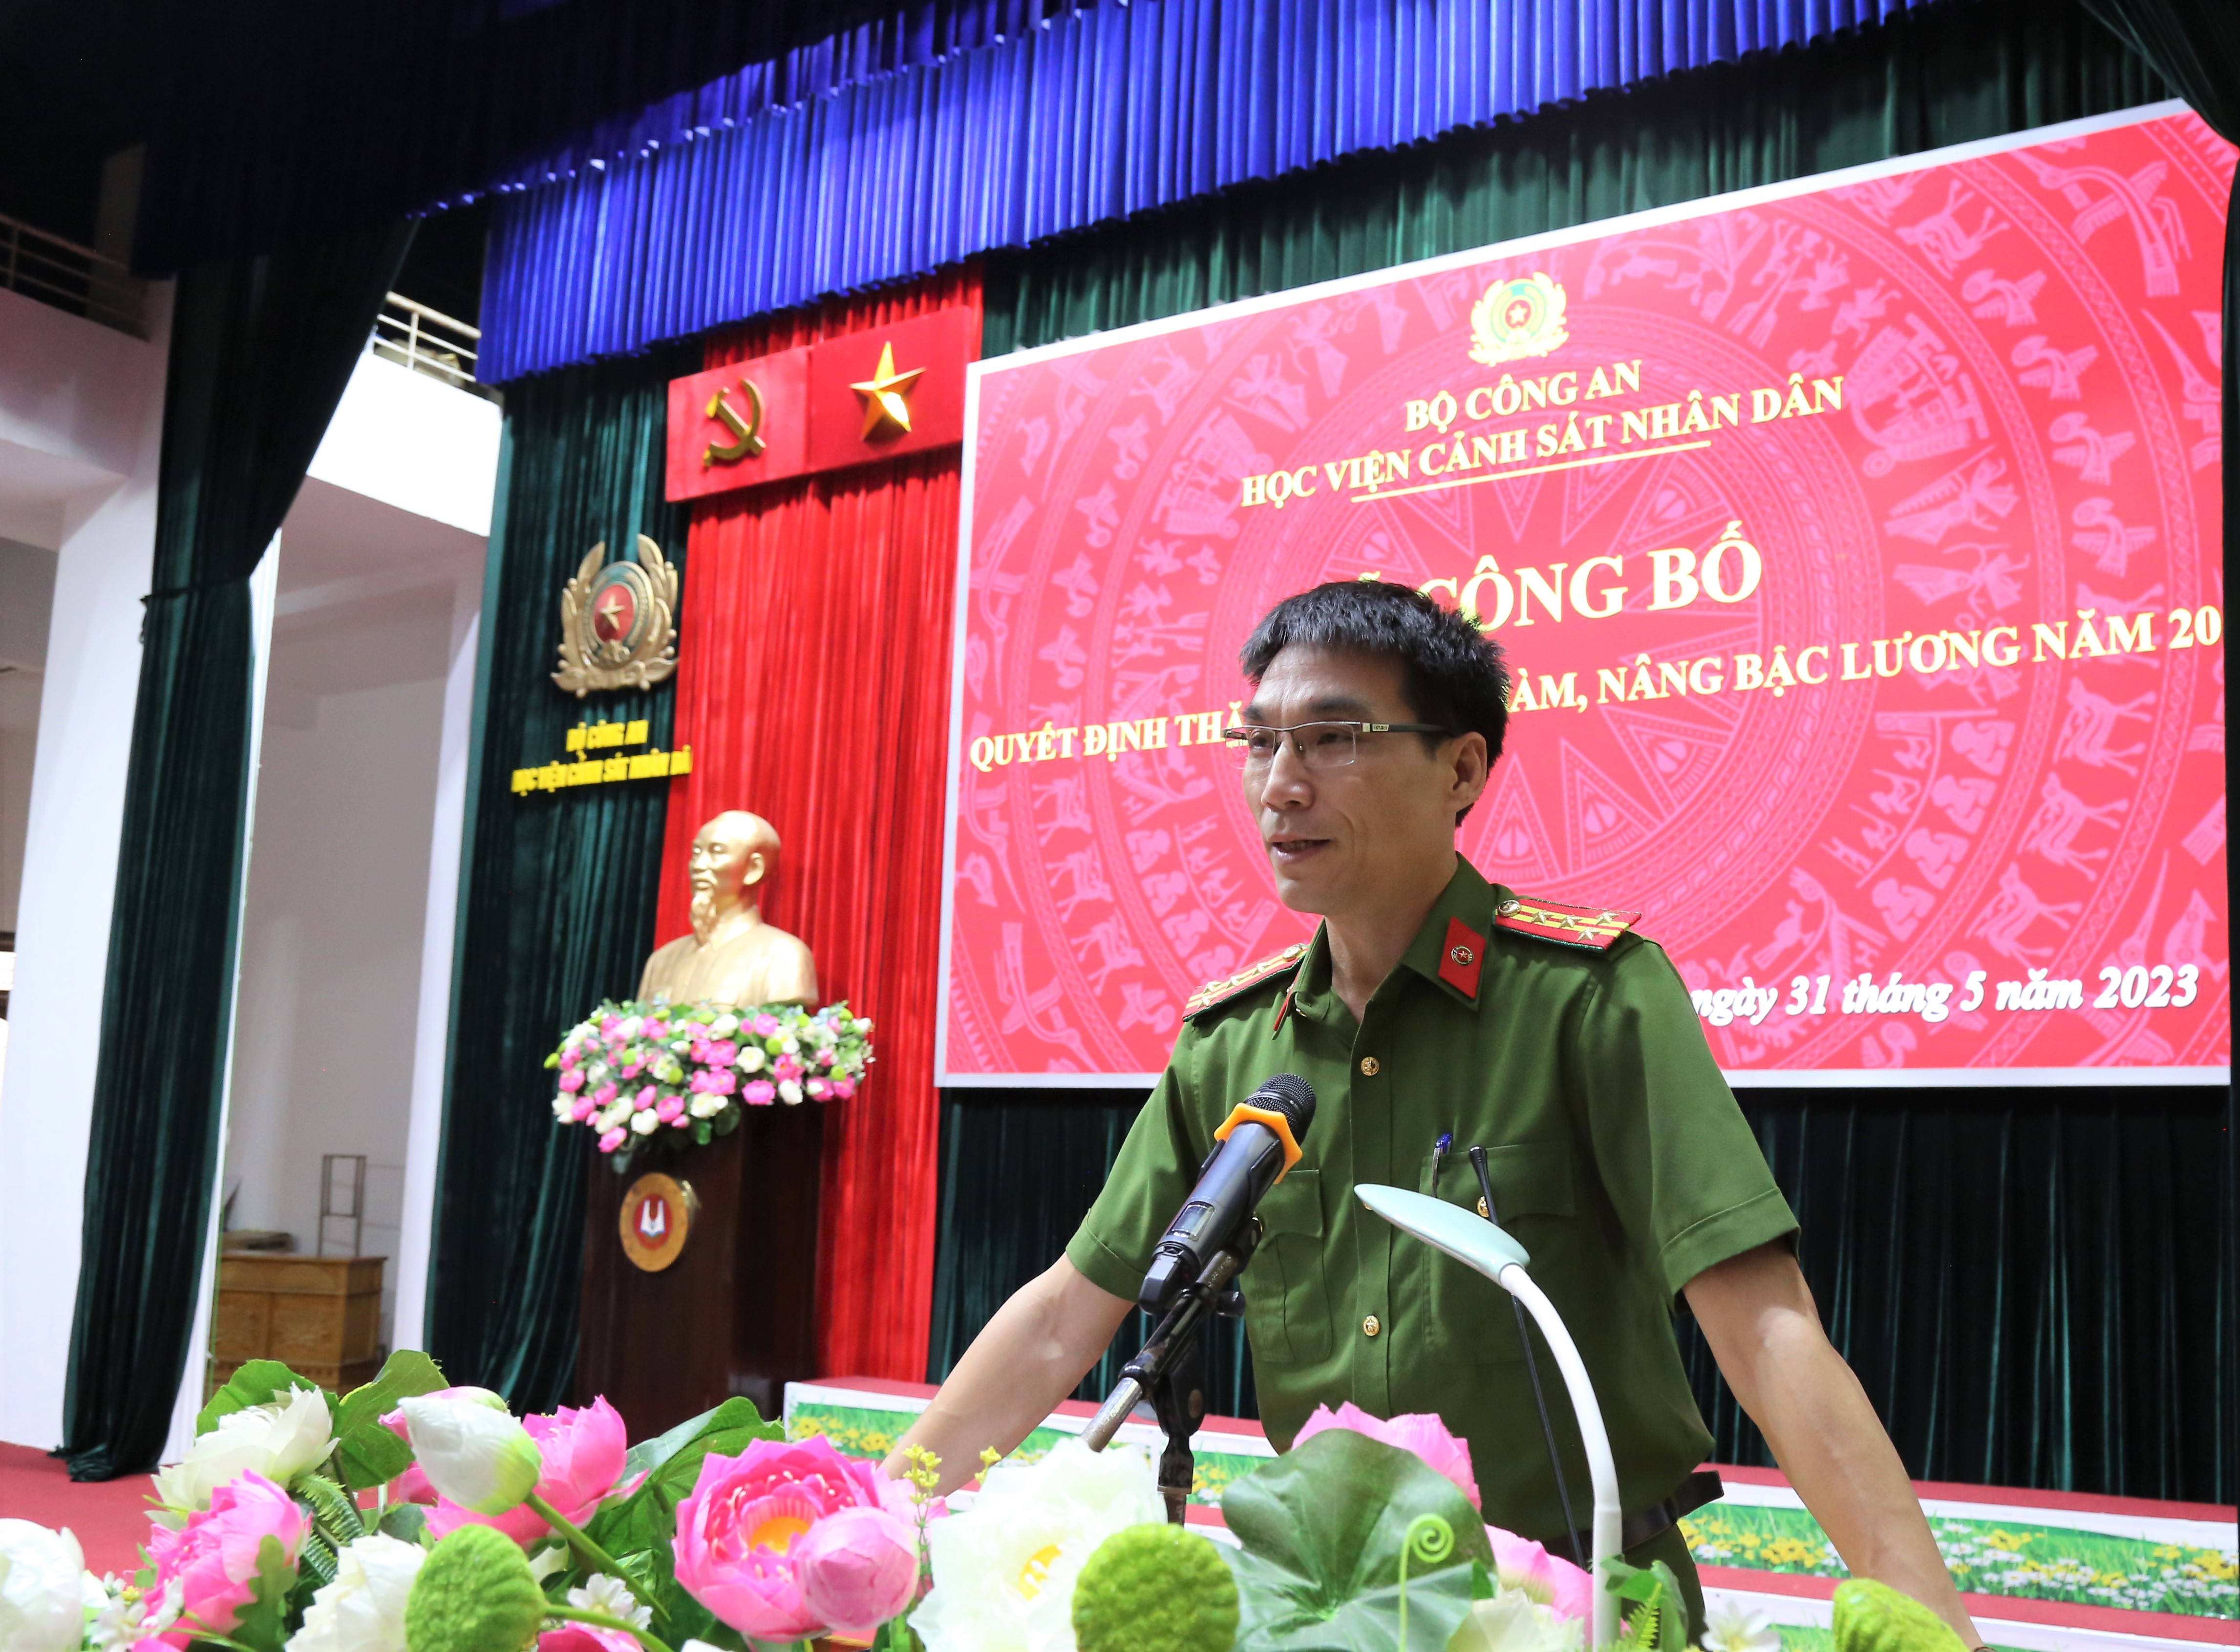 Đại tá Ngô Gia Bắc, Trưởng khoa Cảnh sát PCTP về ma túy phát biểu tại buổi lễ